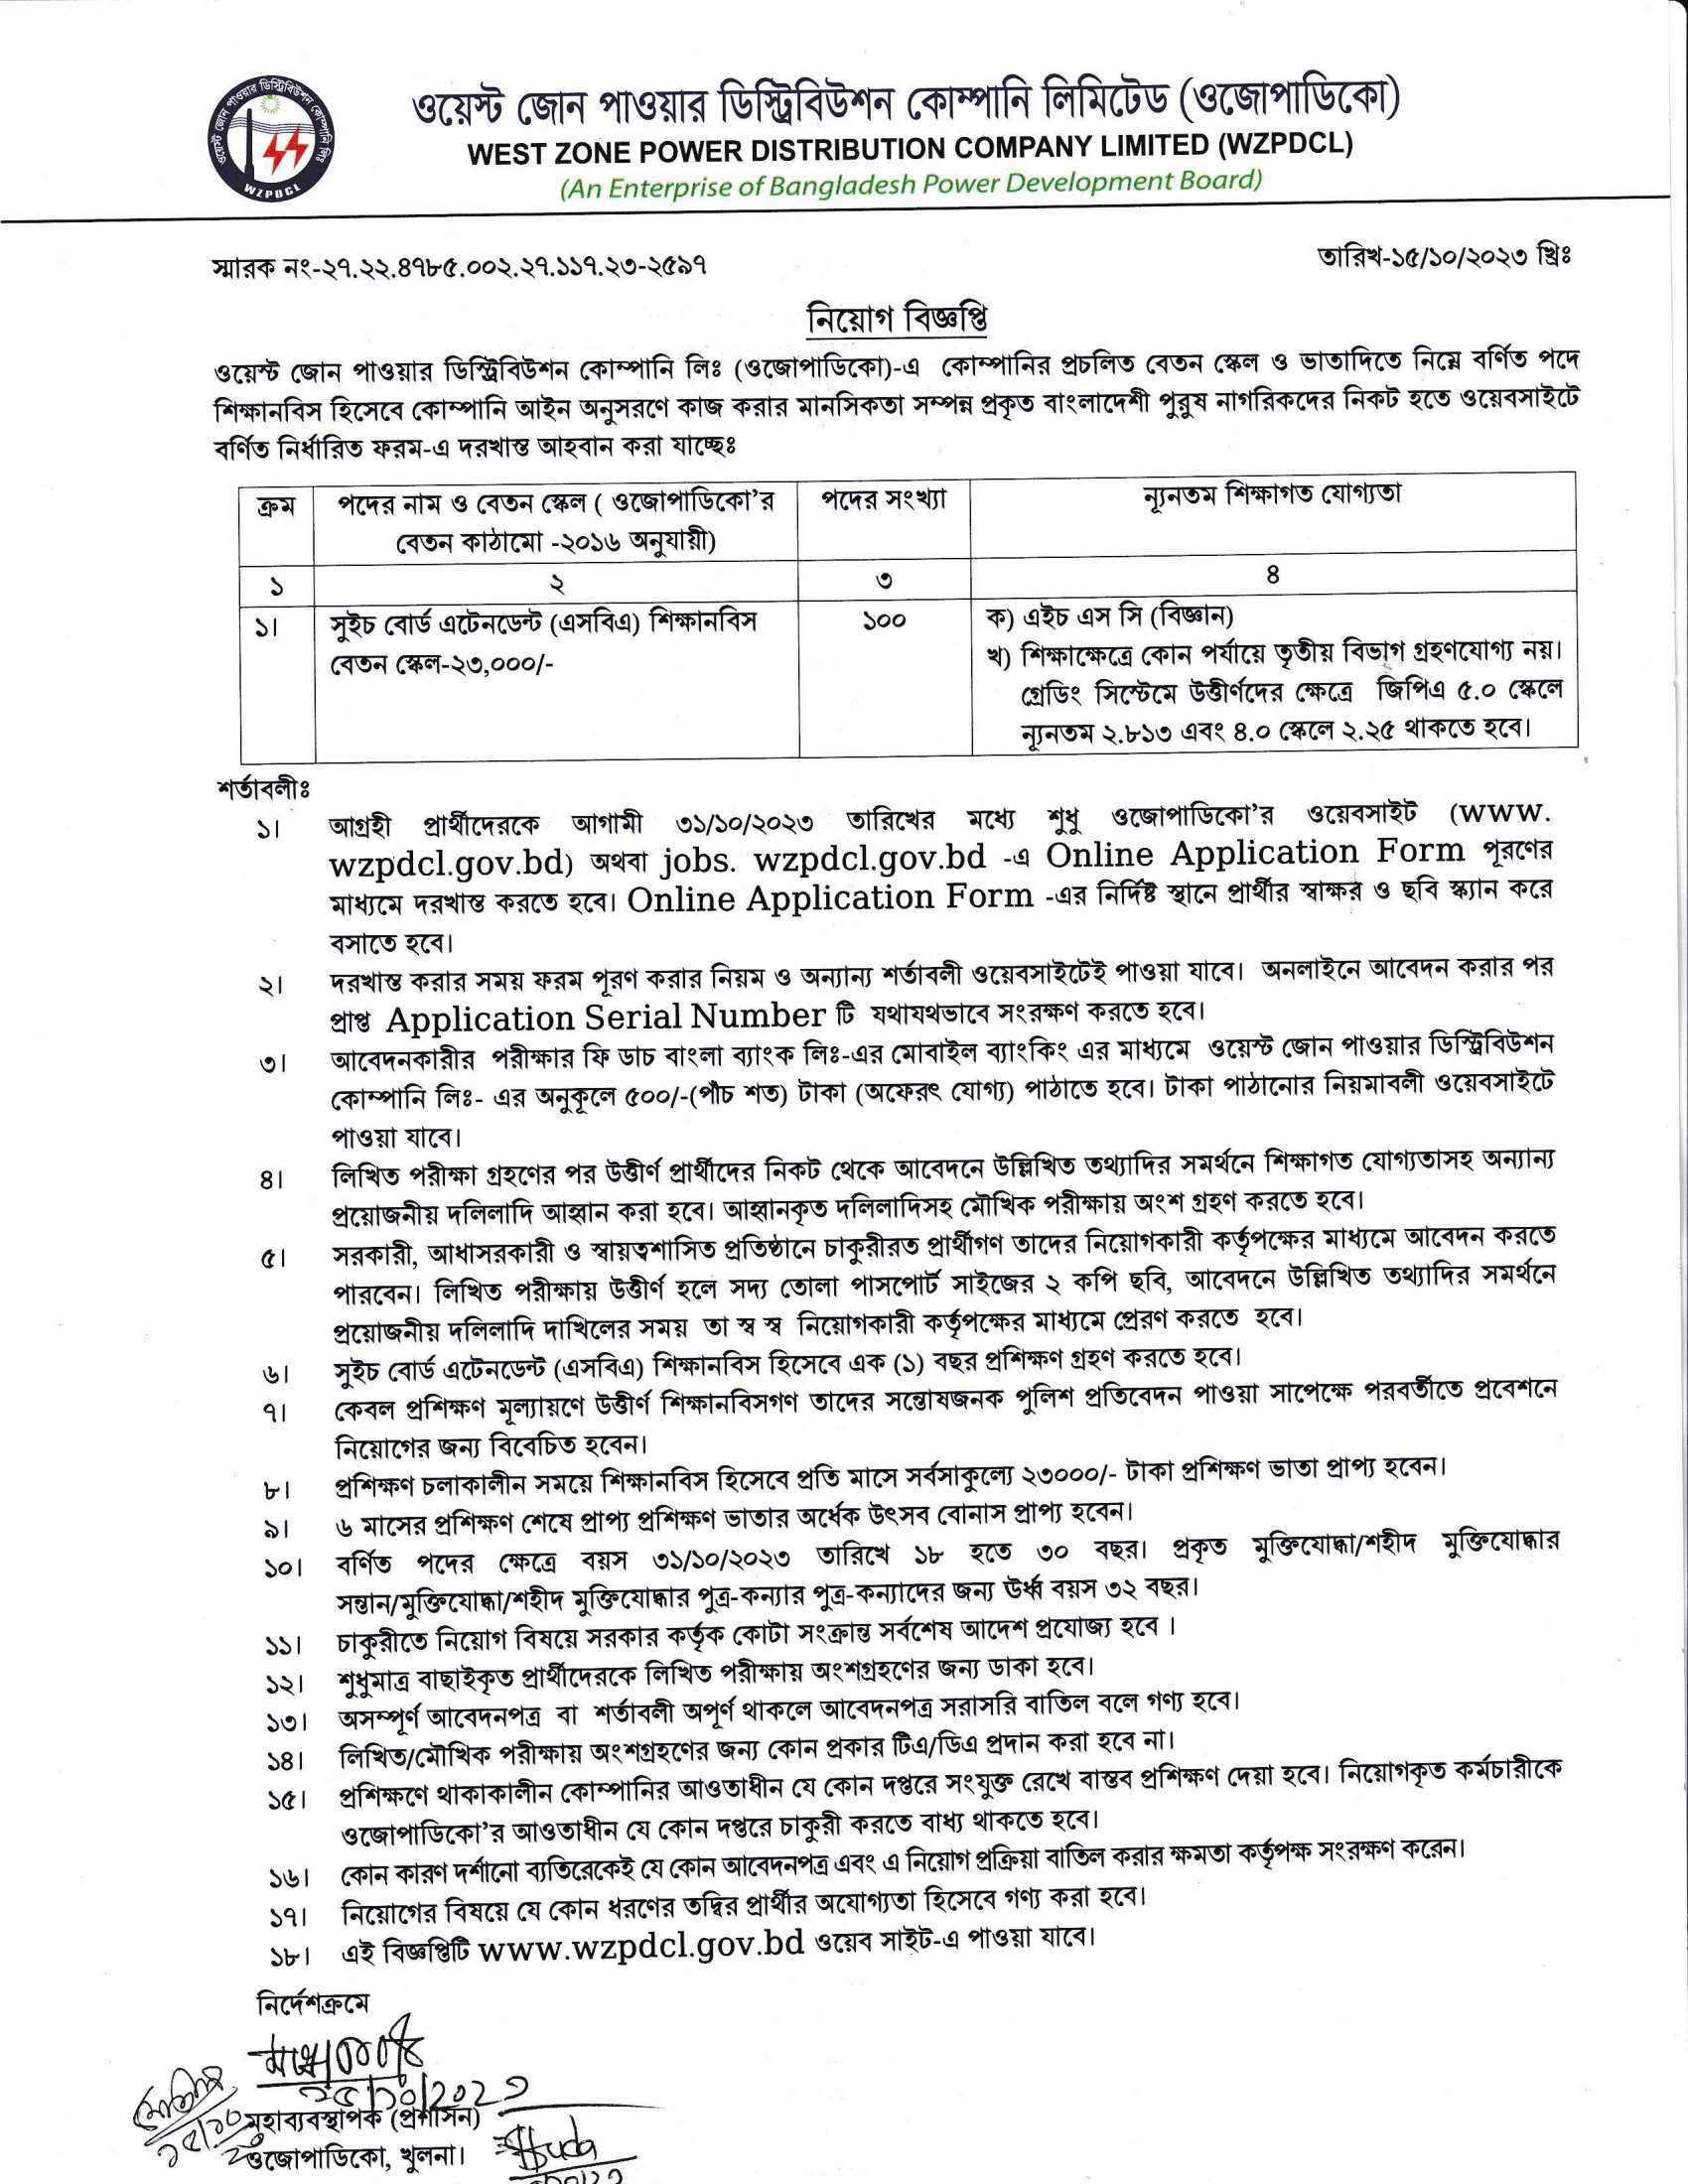 পিডিবি নিয়োগ বিজ্ঞপ্তি ২০২৩ - BPDB Job Circular 2023 - বিদ্যুৎ উন্নয়ন বোর্ড নিয়োগ বিজ্ঞপ্তি ২০২৩ - Bangladesh Power Development Board Job Circular 2023 - পিডিবি নিয়োগ বিজ্ঞপ্তি ২০২৪ - BPDB Job Circular 2024 - বিদ্যুৎ উন্নয়ন বোর্ড নিয়োগ বিজ্ঞপ্তি ২০২৪ - Bangladesh Power Development Board Job Circular 2024